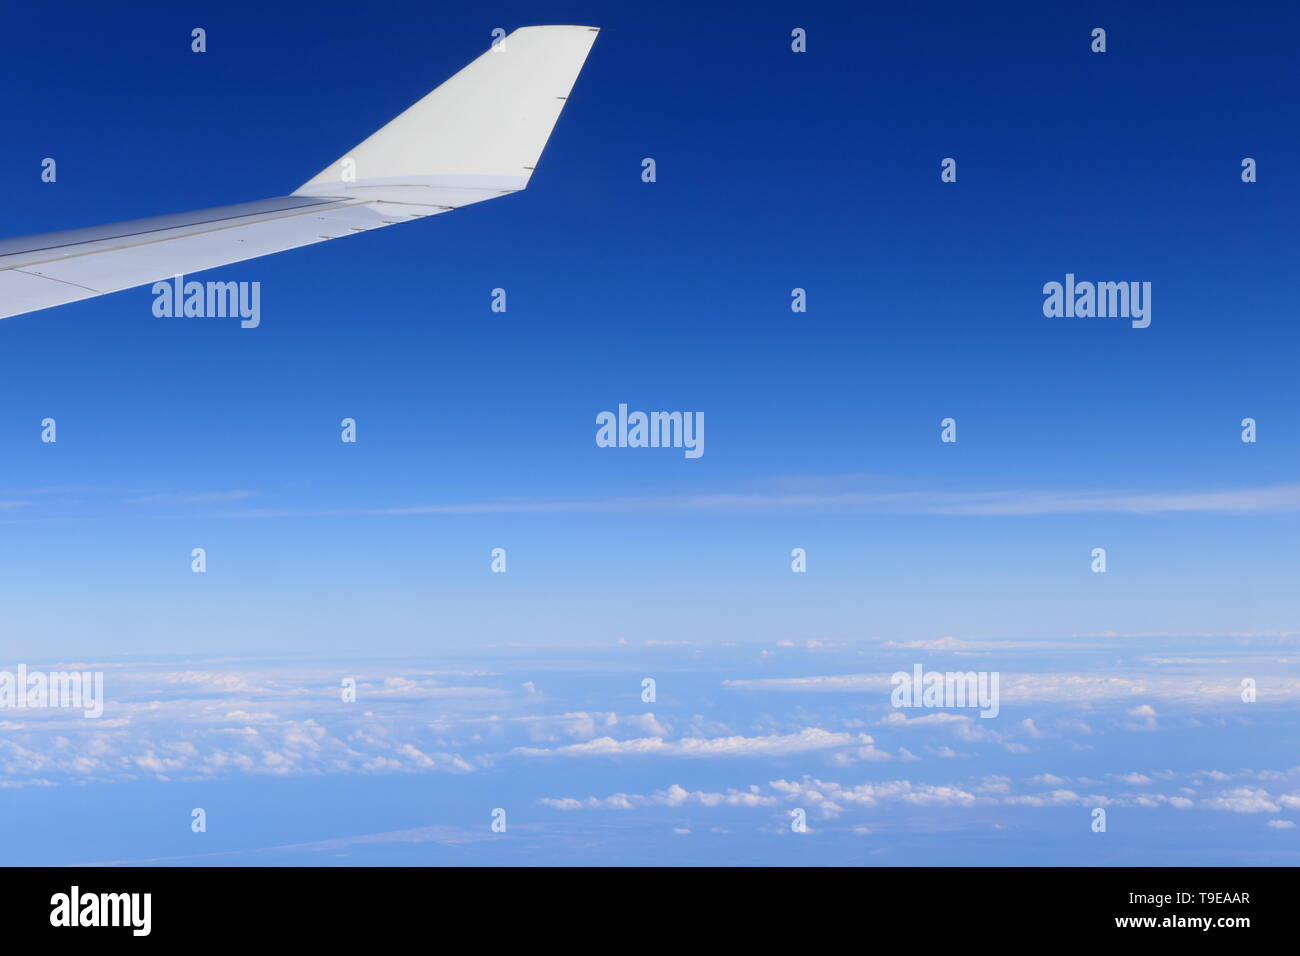 Un avion dans l'air, avec un ciel clair à l'arrière-plan Banque D'Images